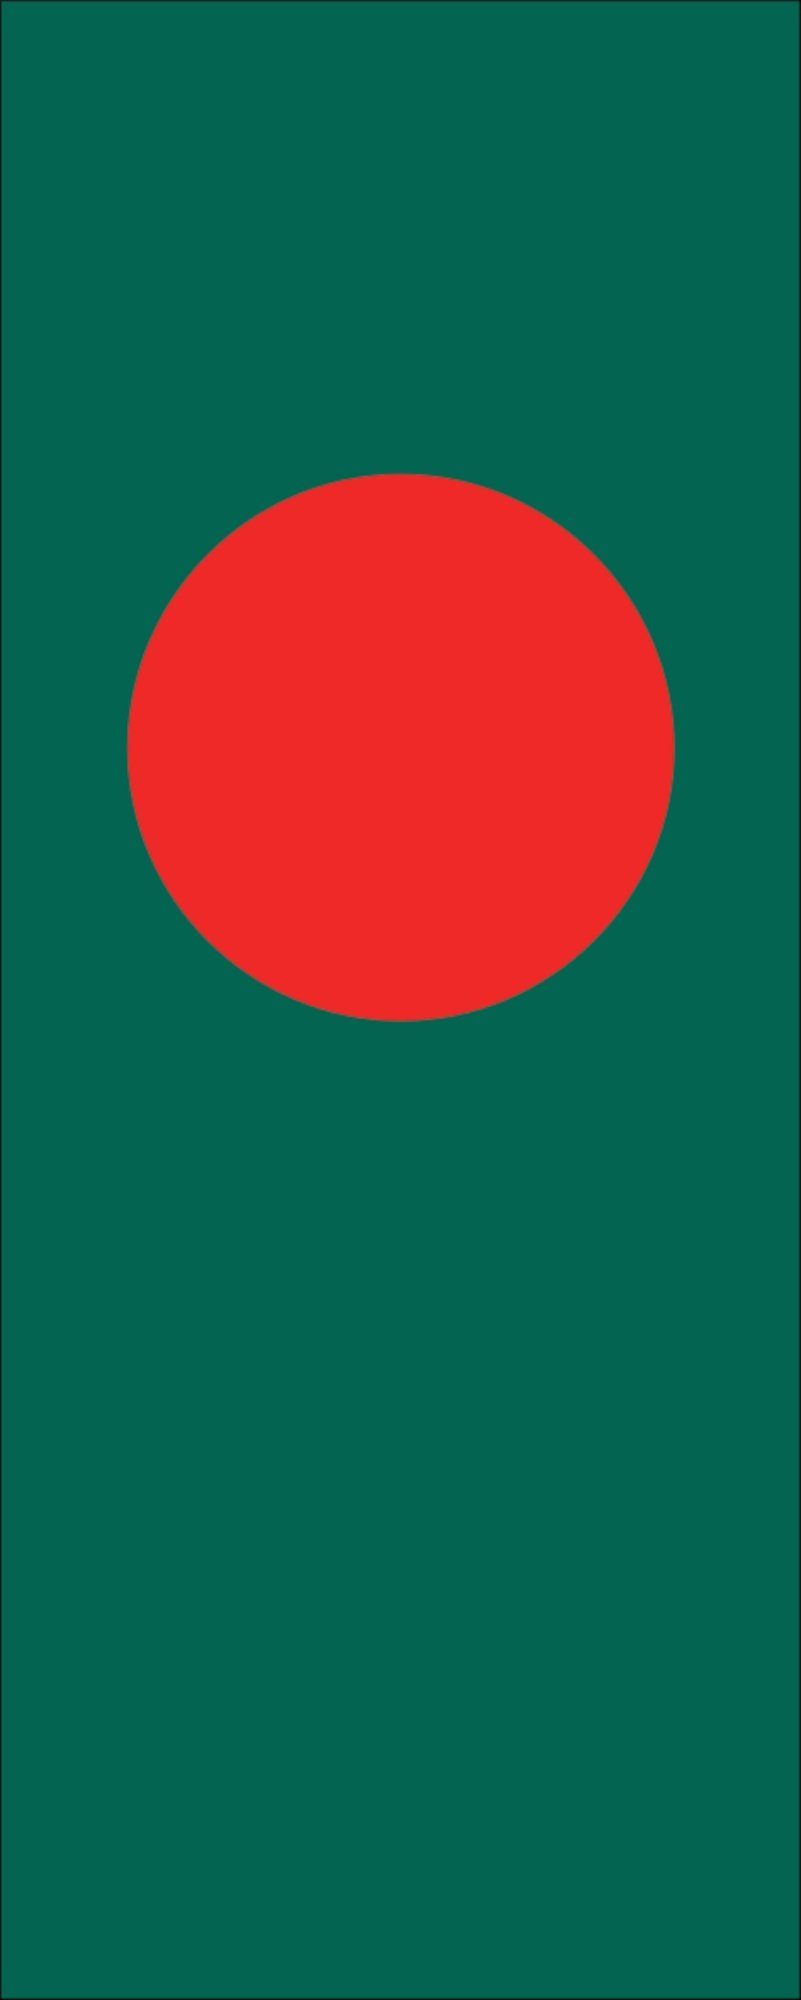 110 Bangladesch g/m² flaggenmeer Flagge Flagge Hochformat